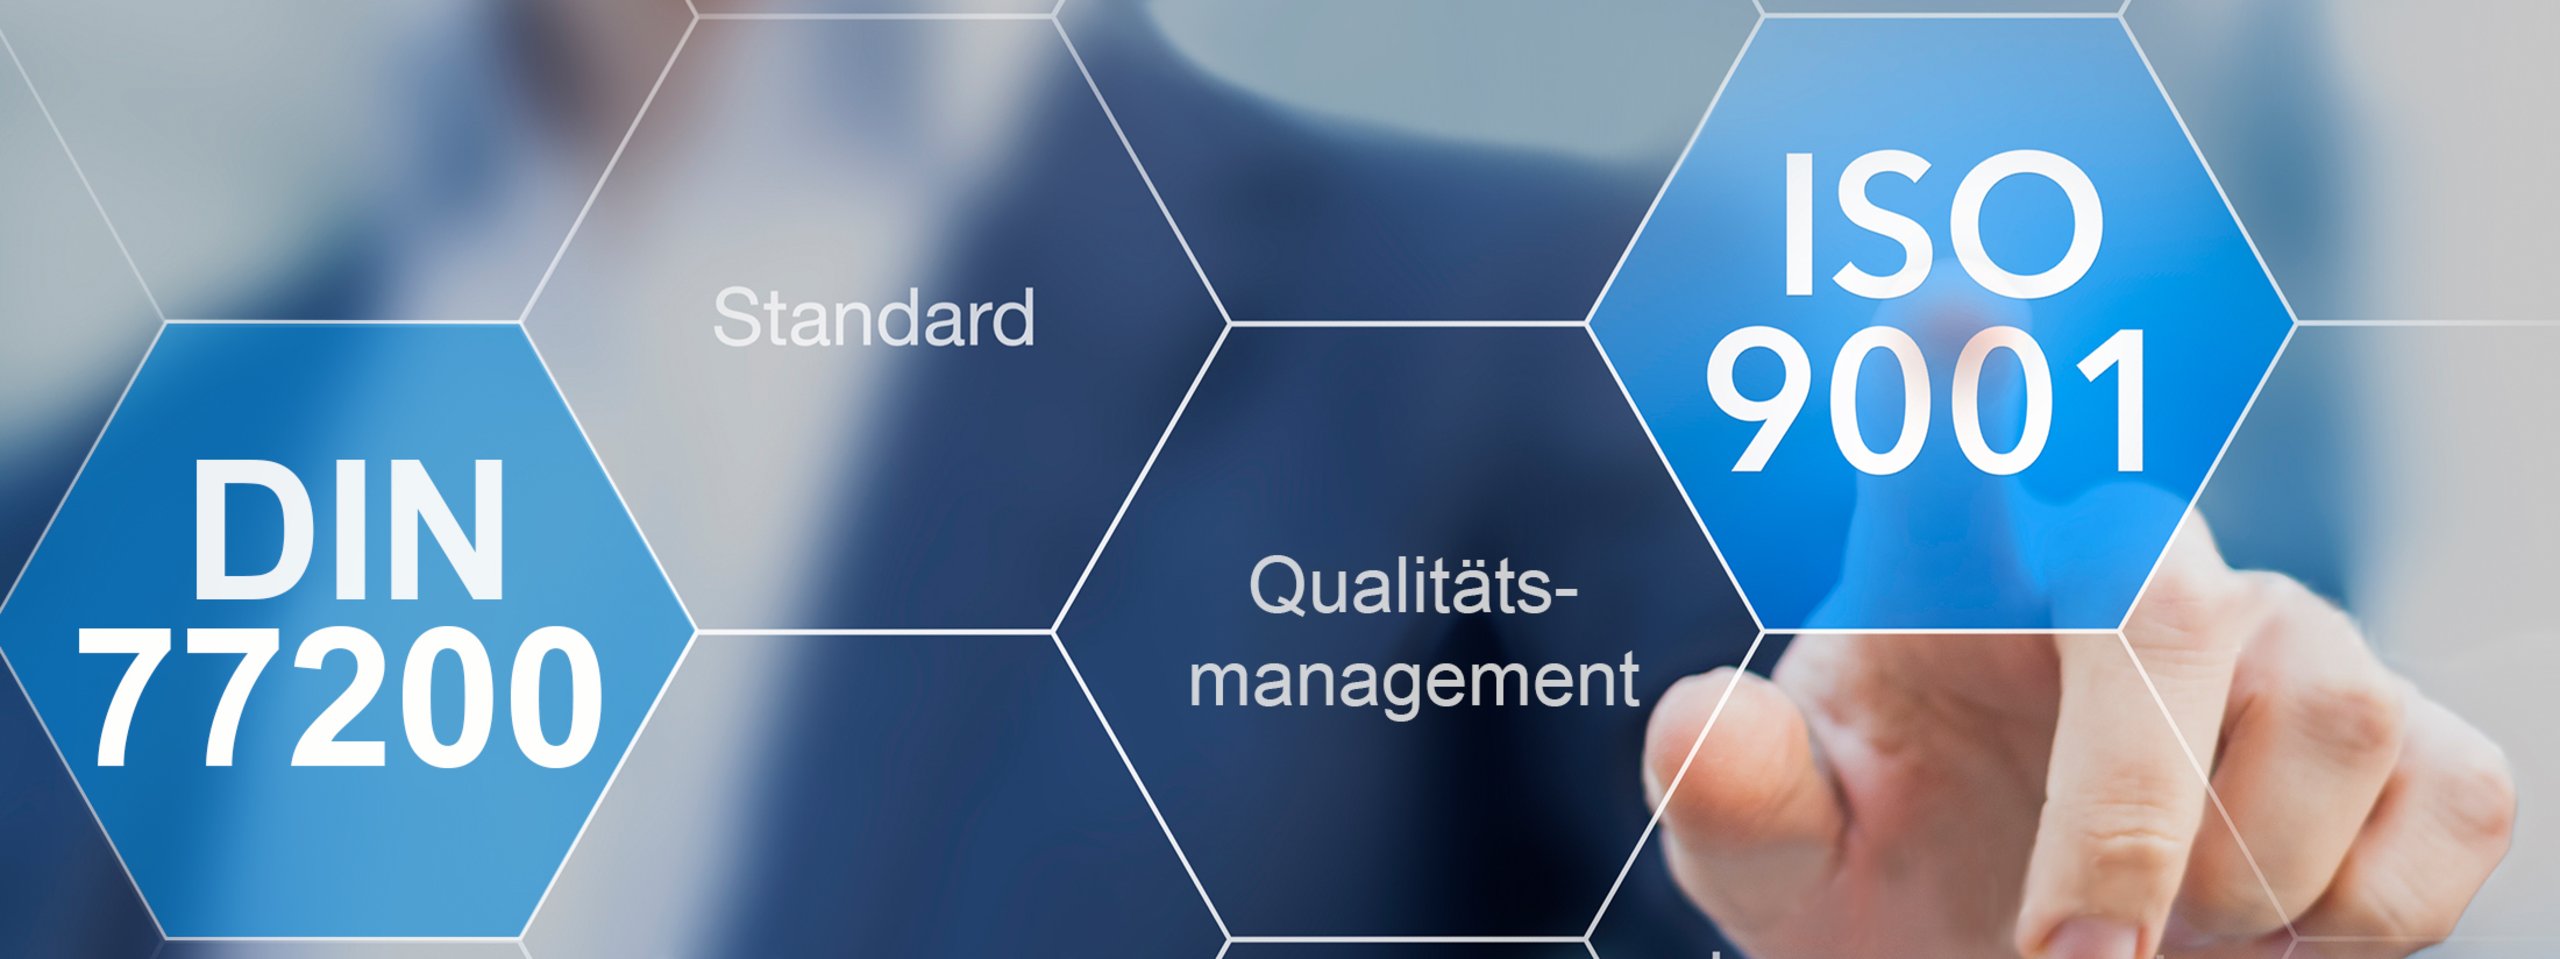 Qualitätsmanagement Zertifizerung ISO9001 DIN77200 Zertifiziert Dekra